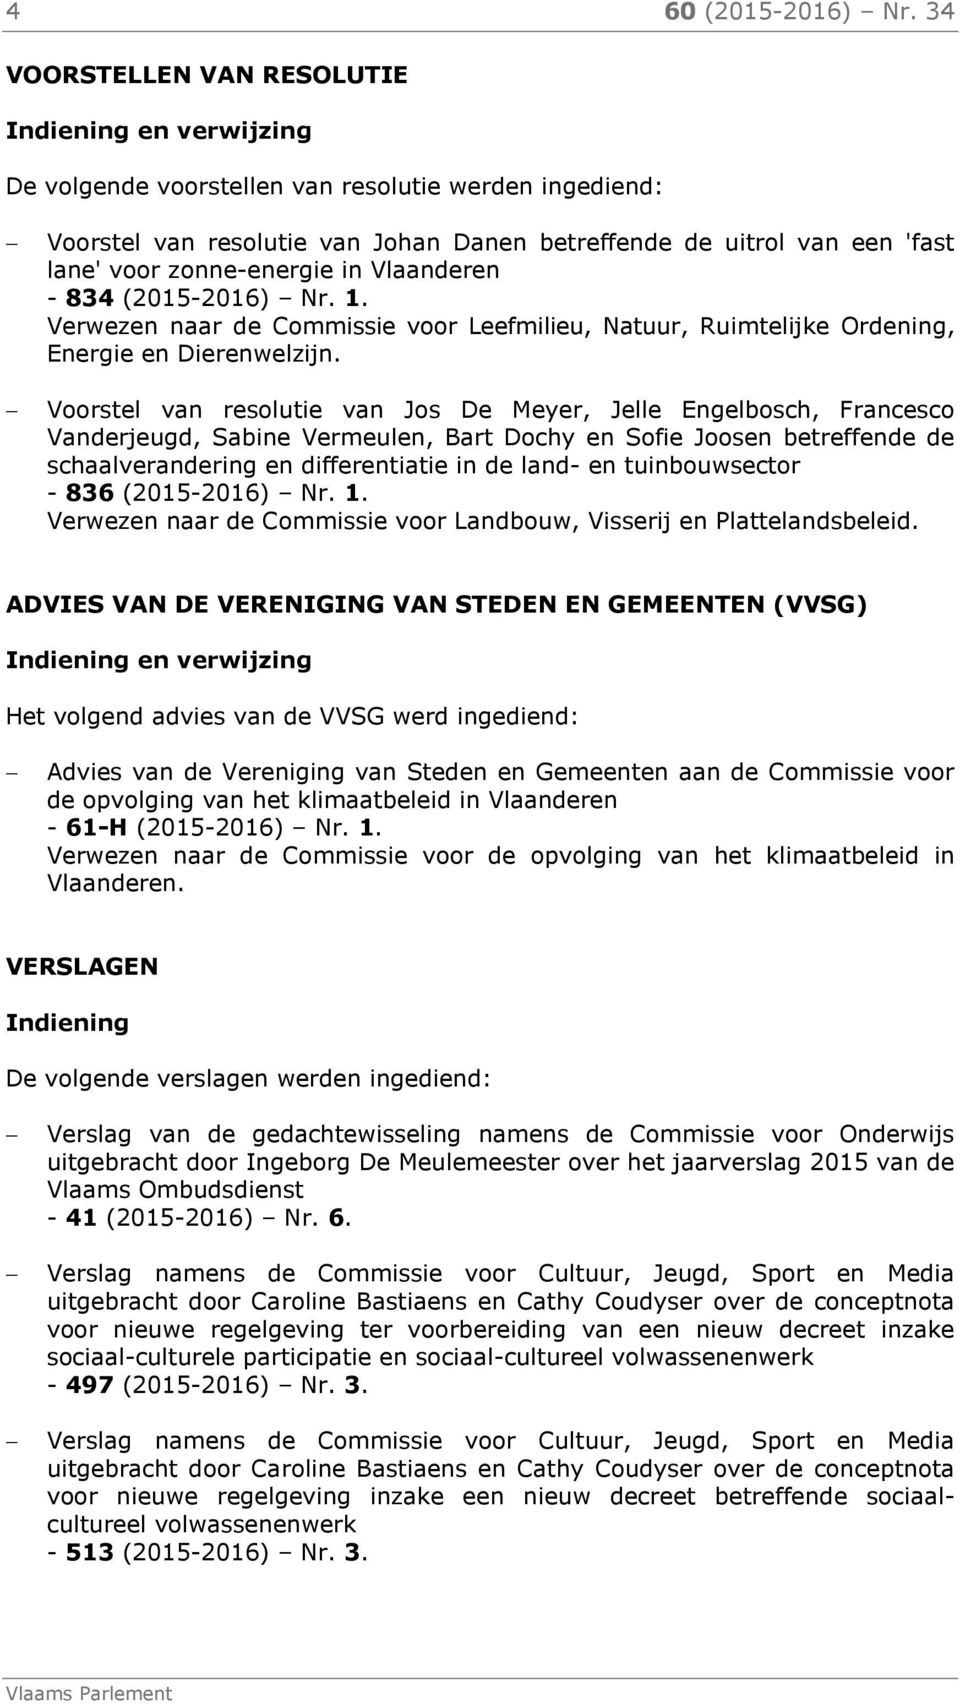 in Vlaanderen - 834 (2015-2016) Nr. 1. Verwezen naar de Commissie voor Leefmilieu, Natuur, Ruimtelijke Ordening, Energie en Dierenwelzijn.